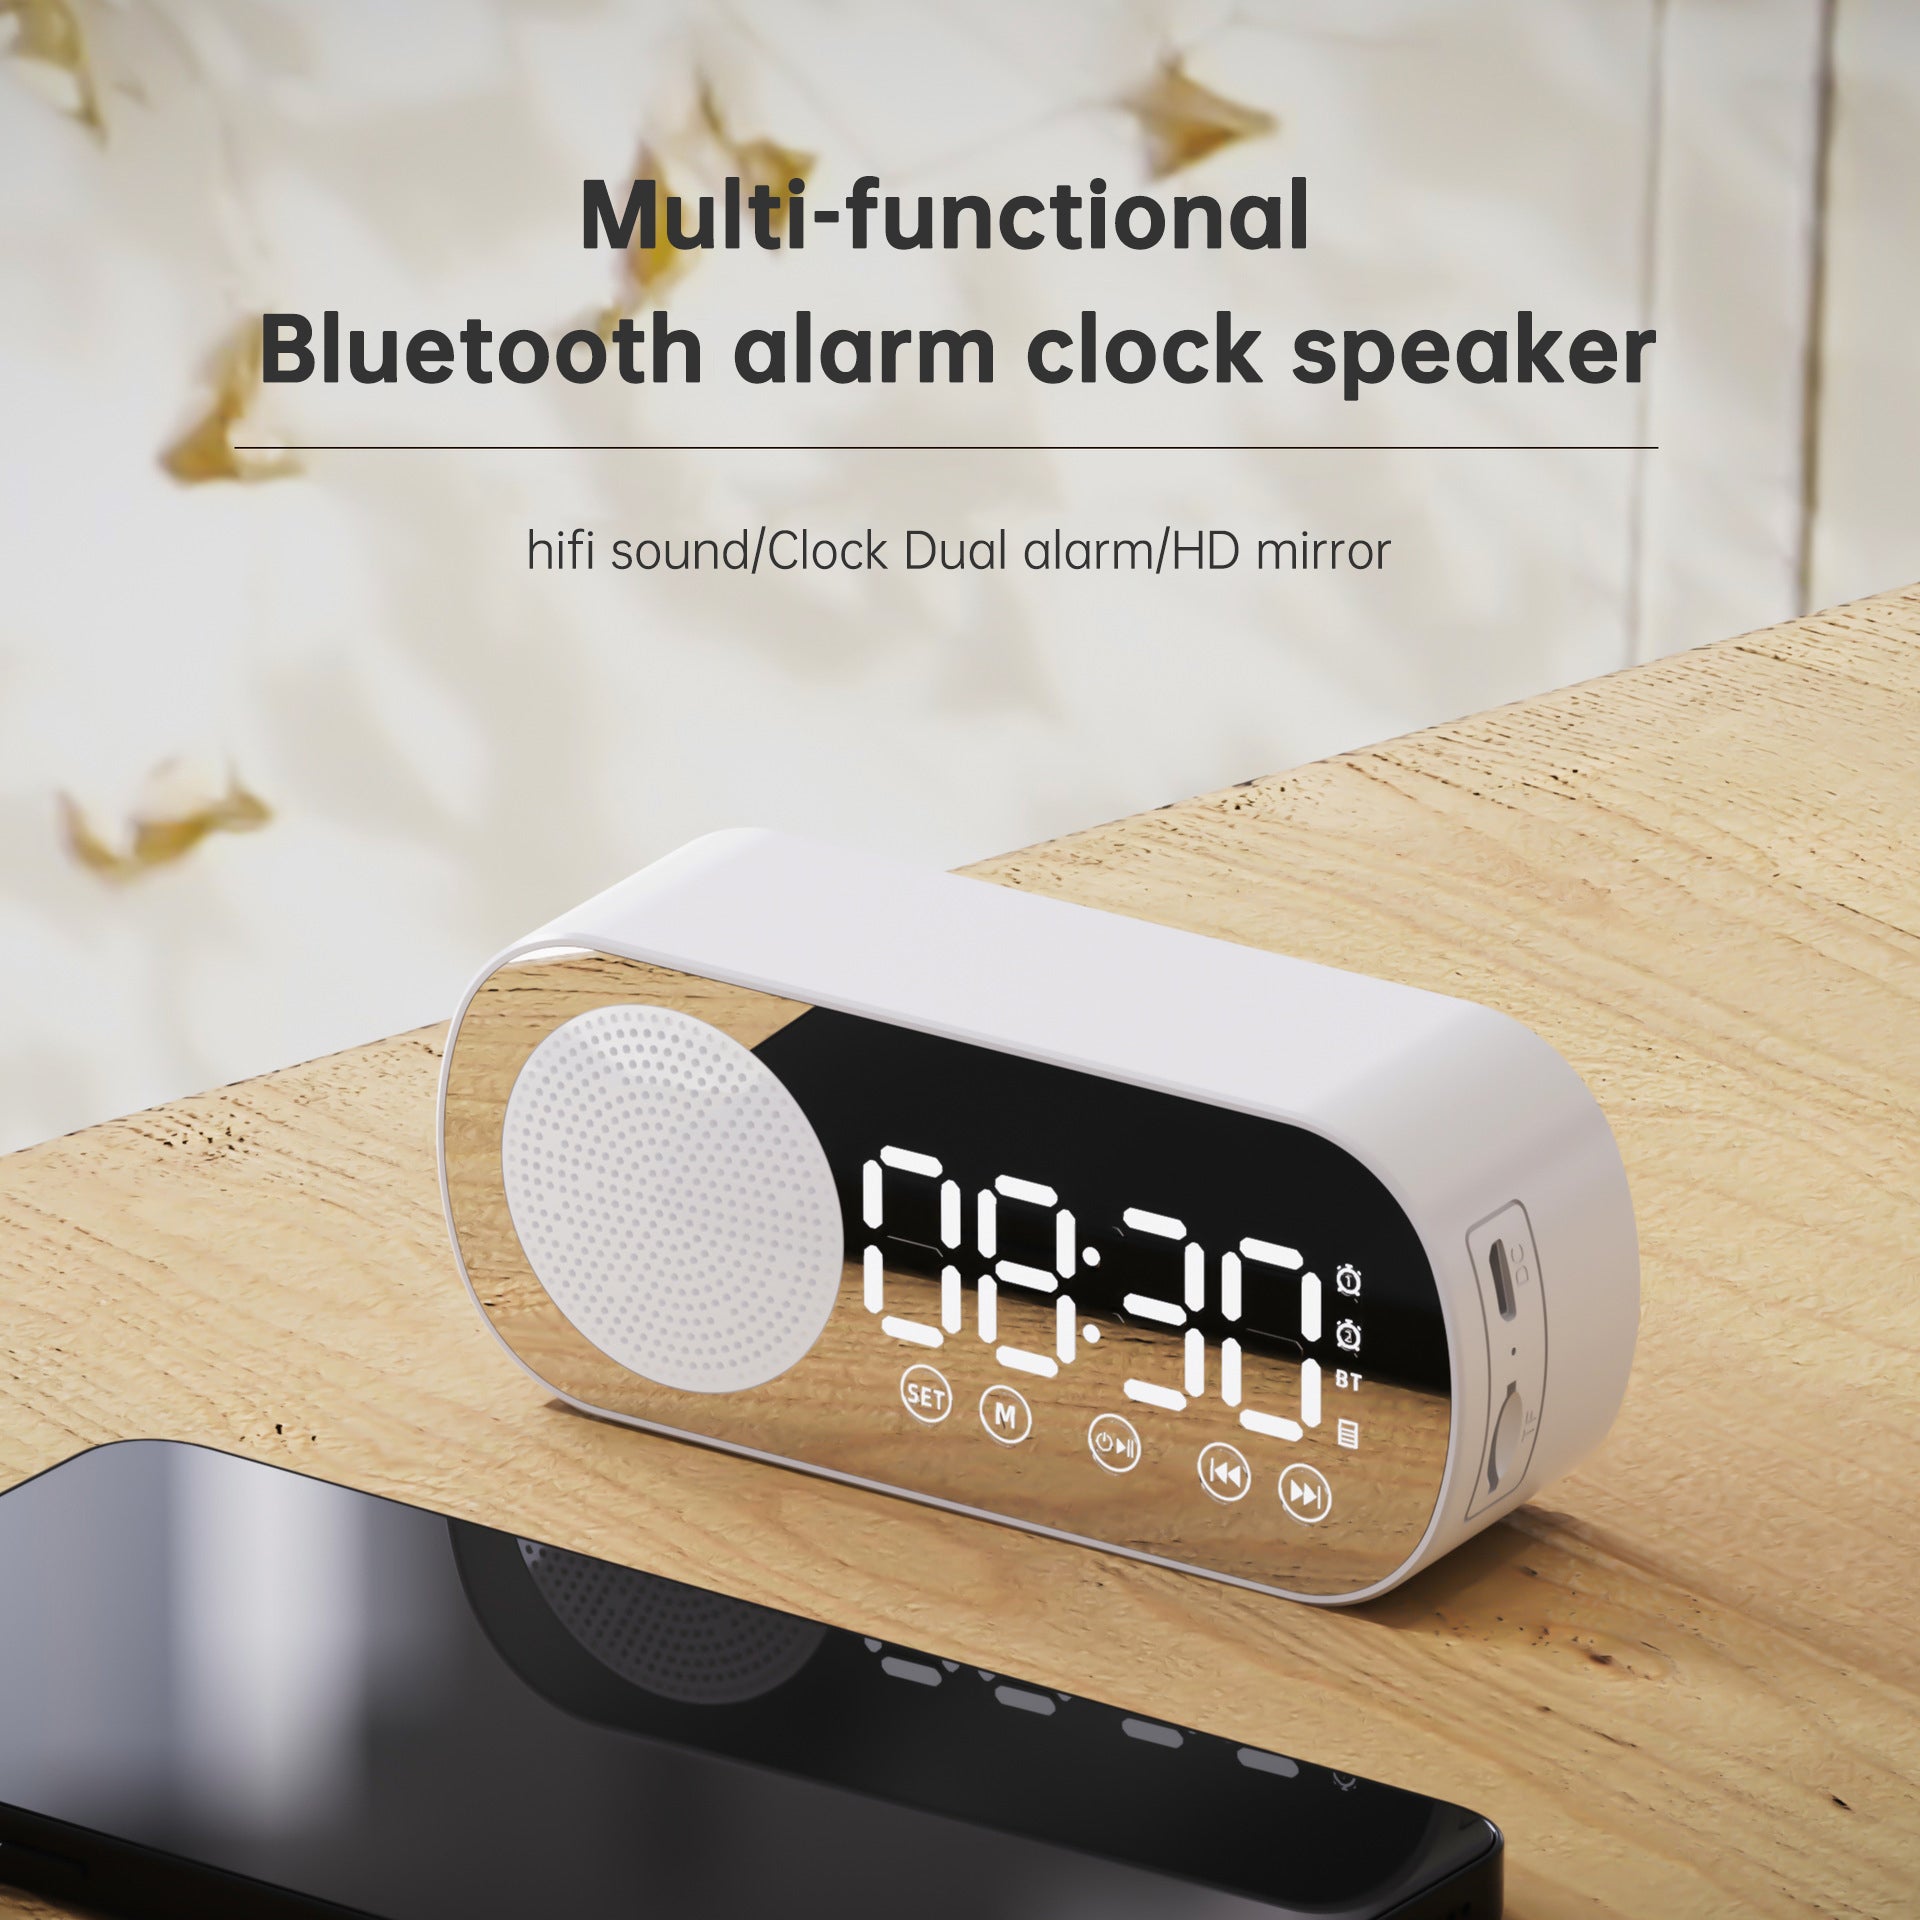 Multi function bluetooth speaker alarm clock